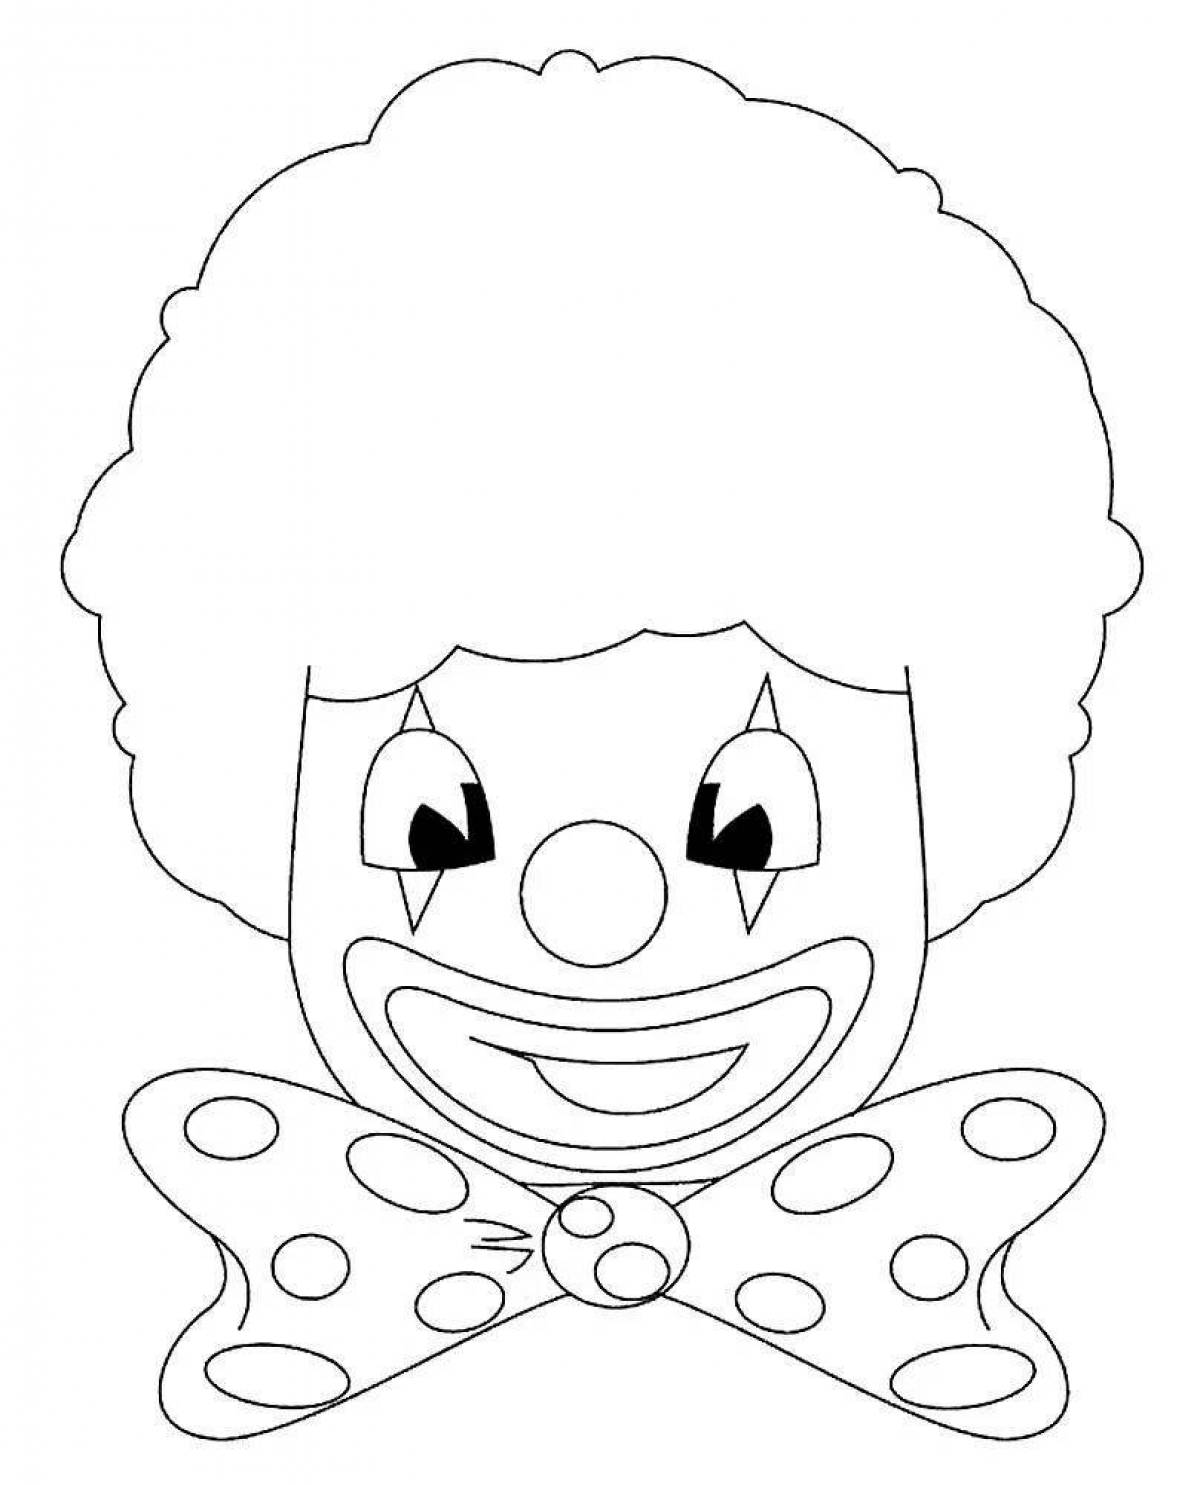 Лицо клоуна: векторные изображения и иллюстрации, которые можно скачать бесплатно | Freepik